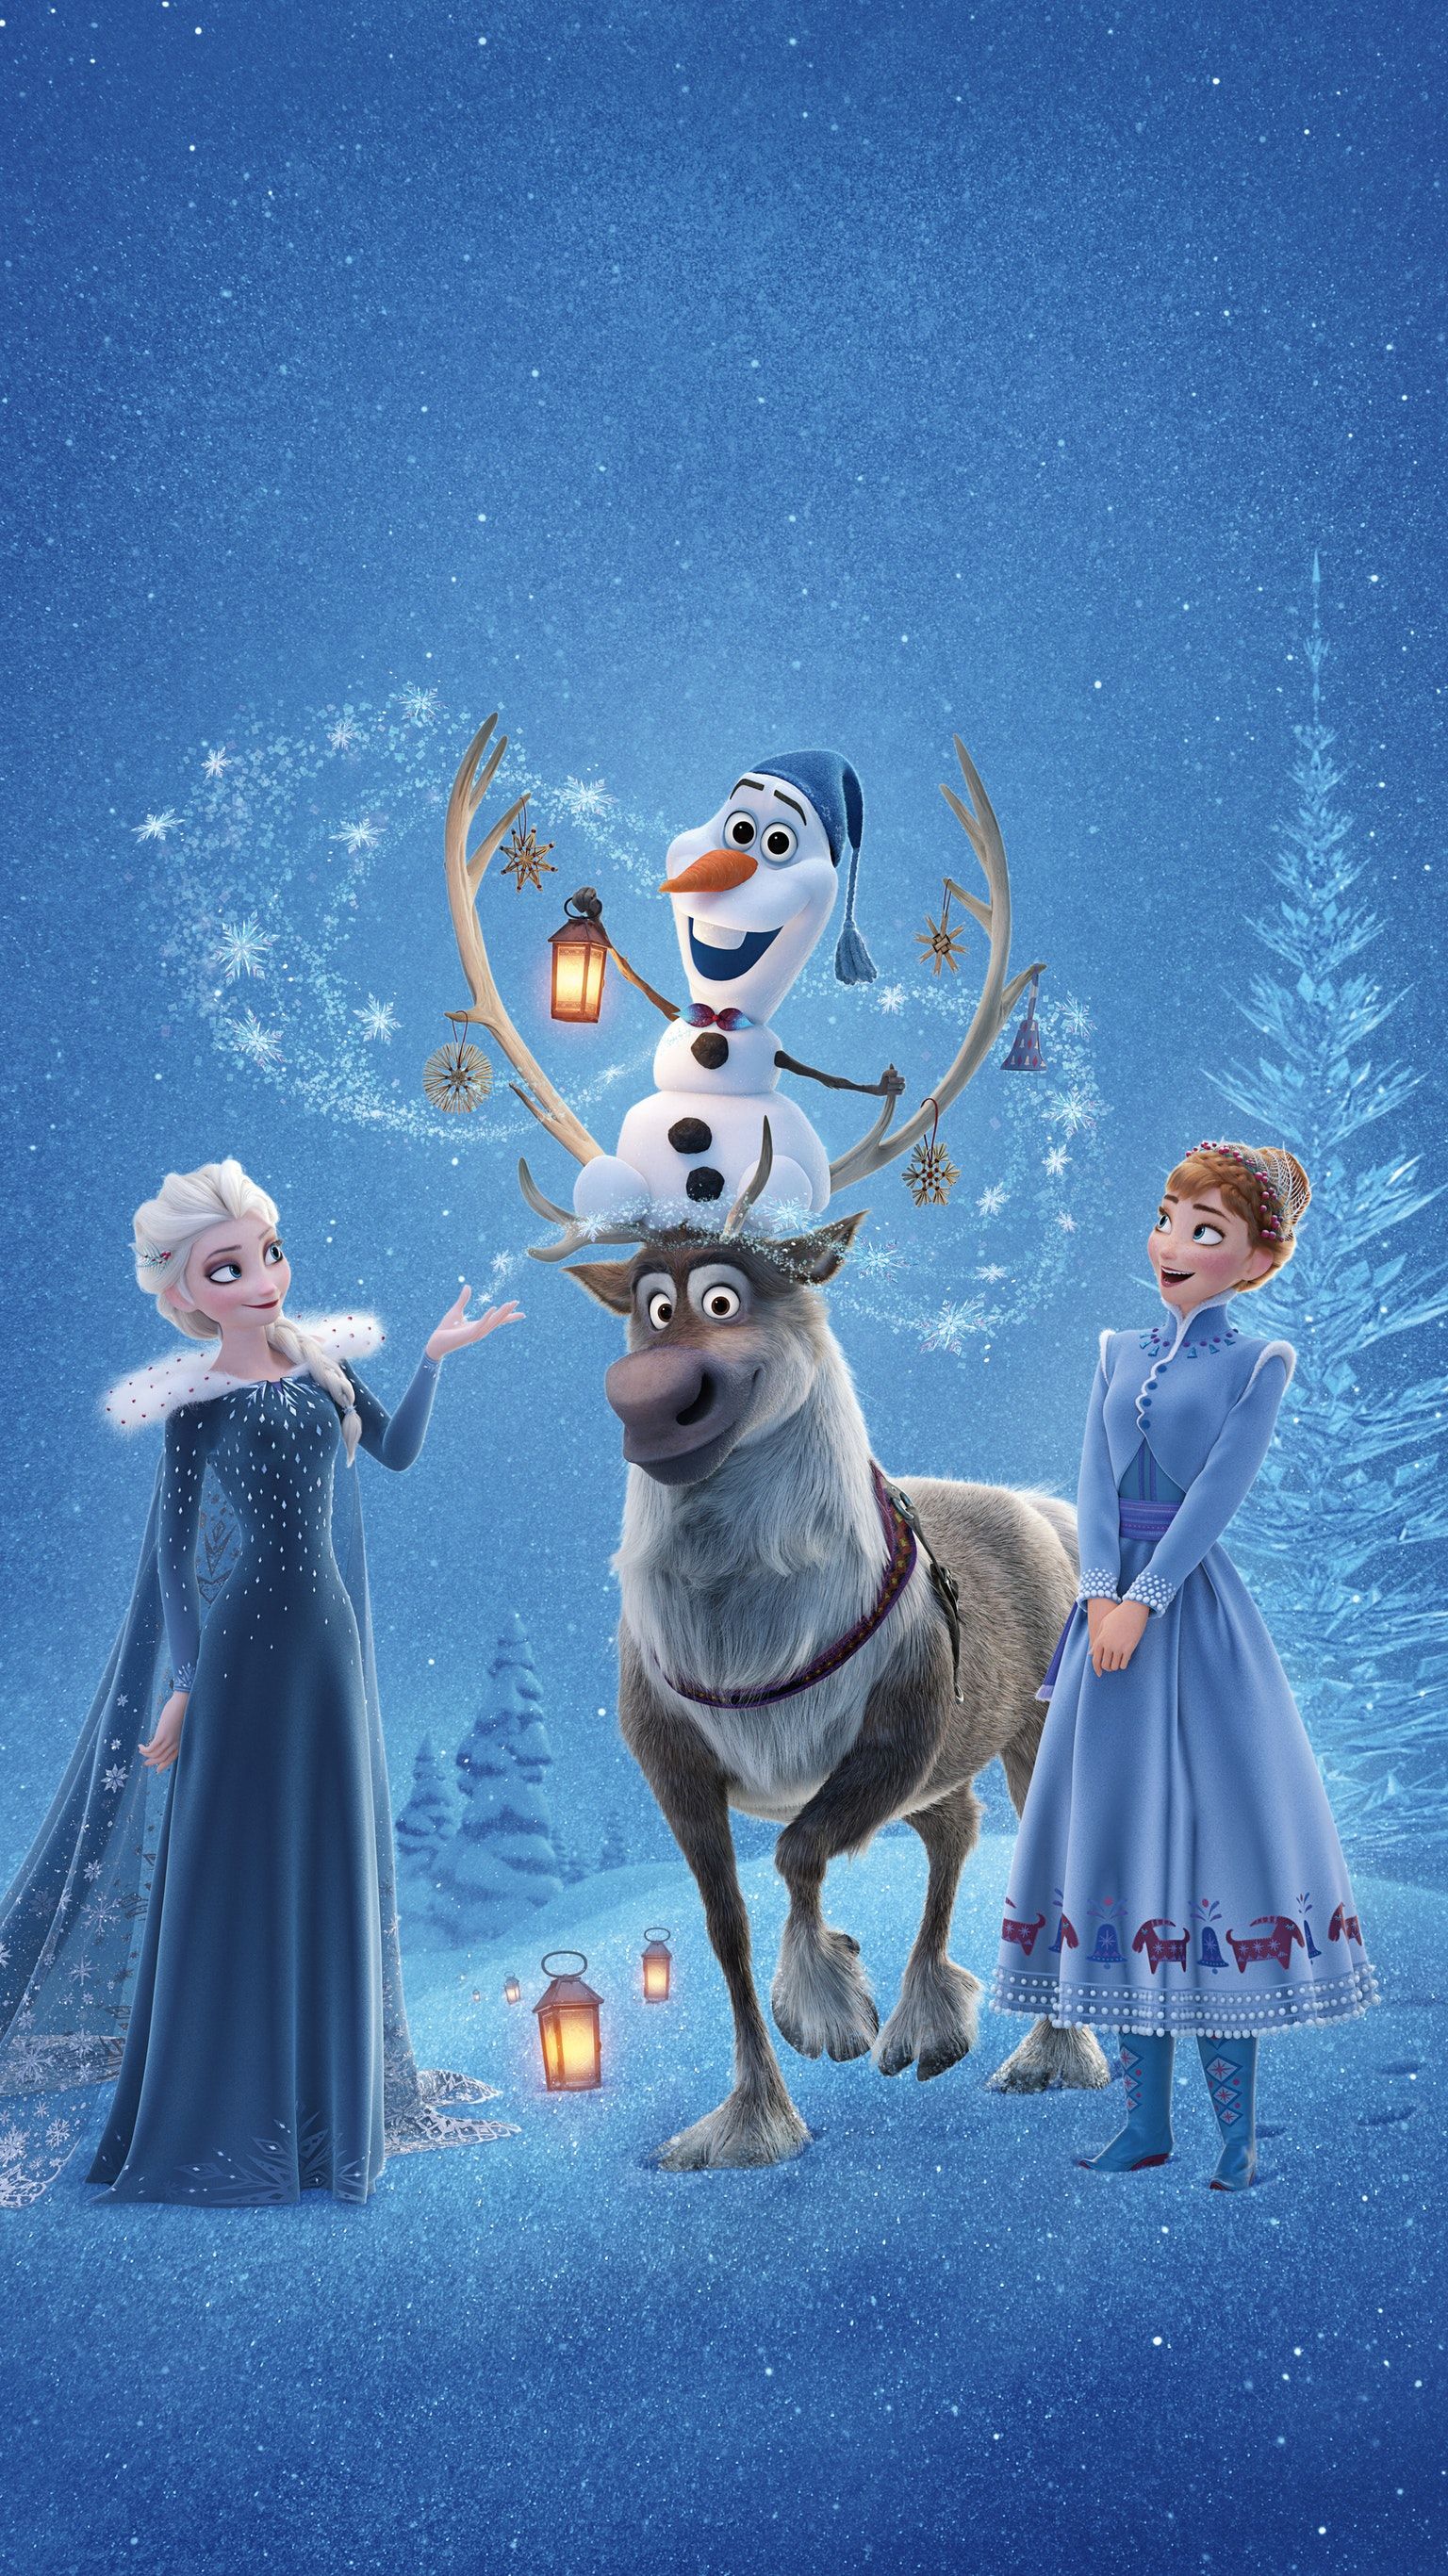 Olaf's Frozen Adventure 2017 - HD Wallpaper 